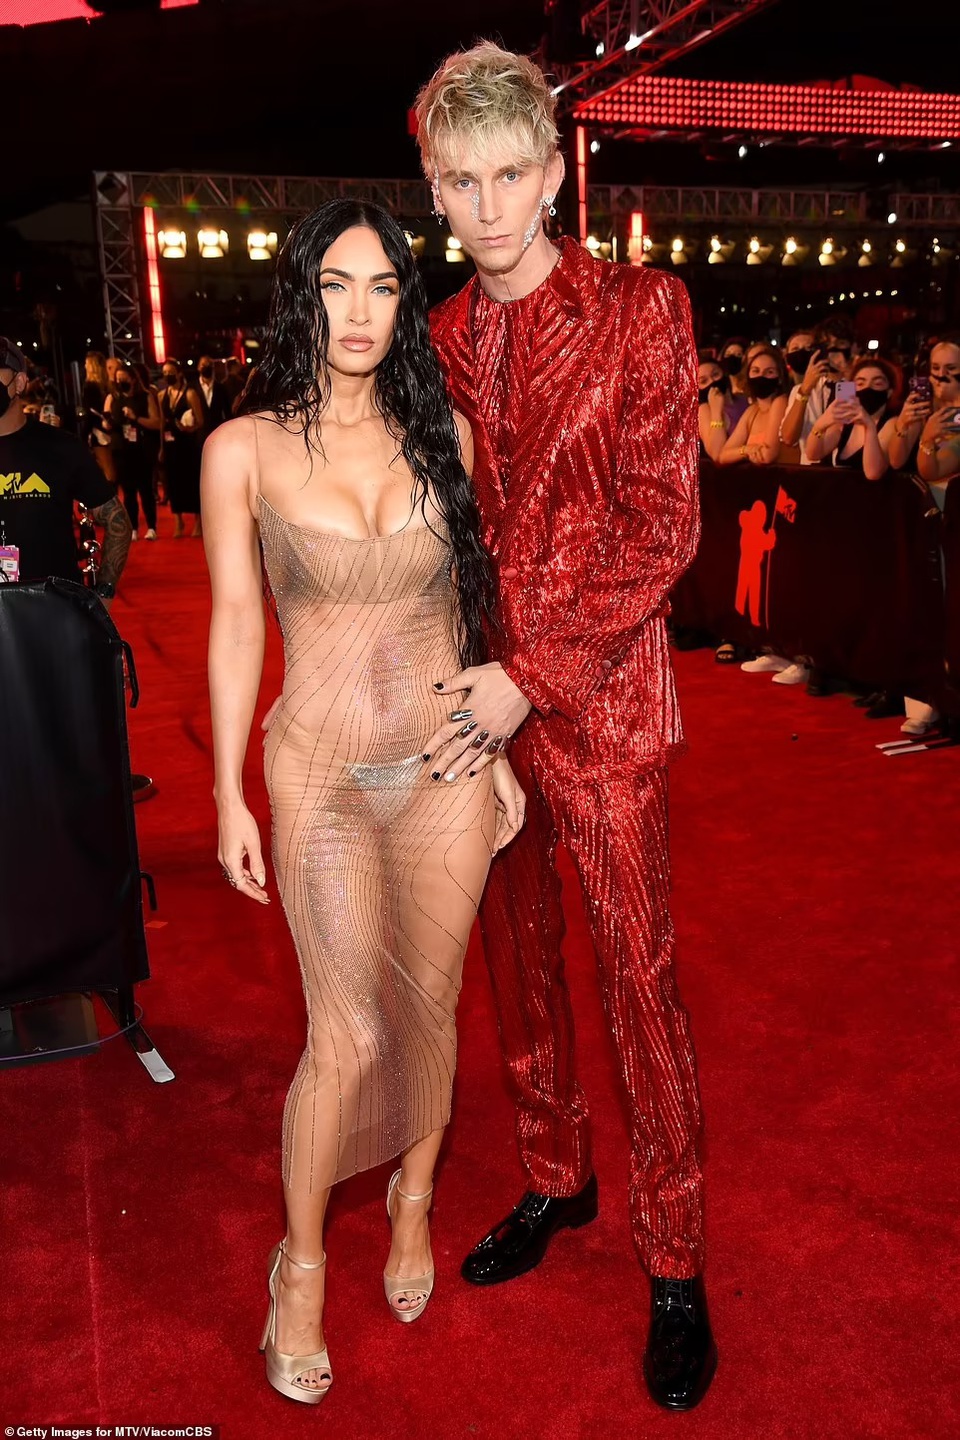 Cặp đôi Megan Fox - Machine Gun Kelly đã thu hút mọi sự chú ý của báo giới khi xuất hiện trên thảm đỏ với những set đồ nổi bật. Đặc biệt là chiếc váy xuyên thấu 'khoe da thịt' của nữ minh tinh nổi tiếng.